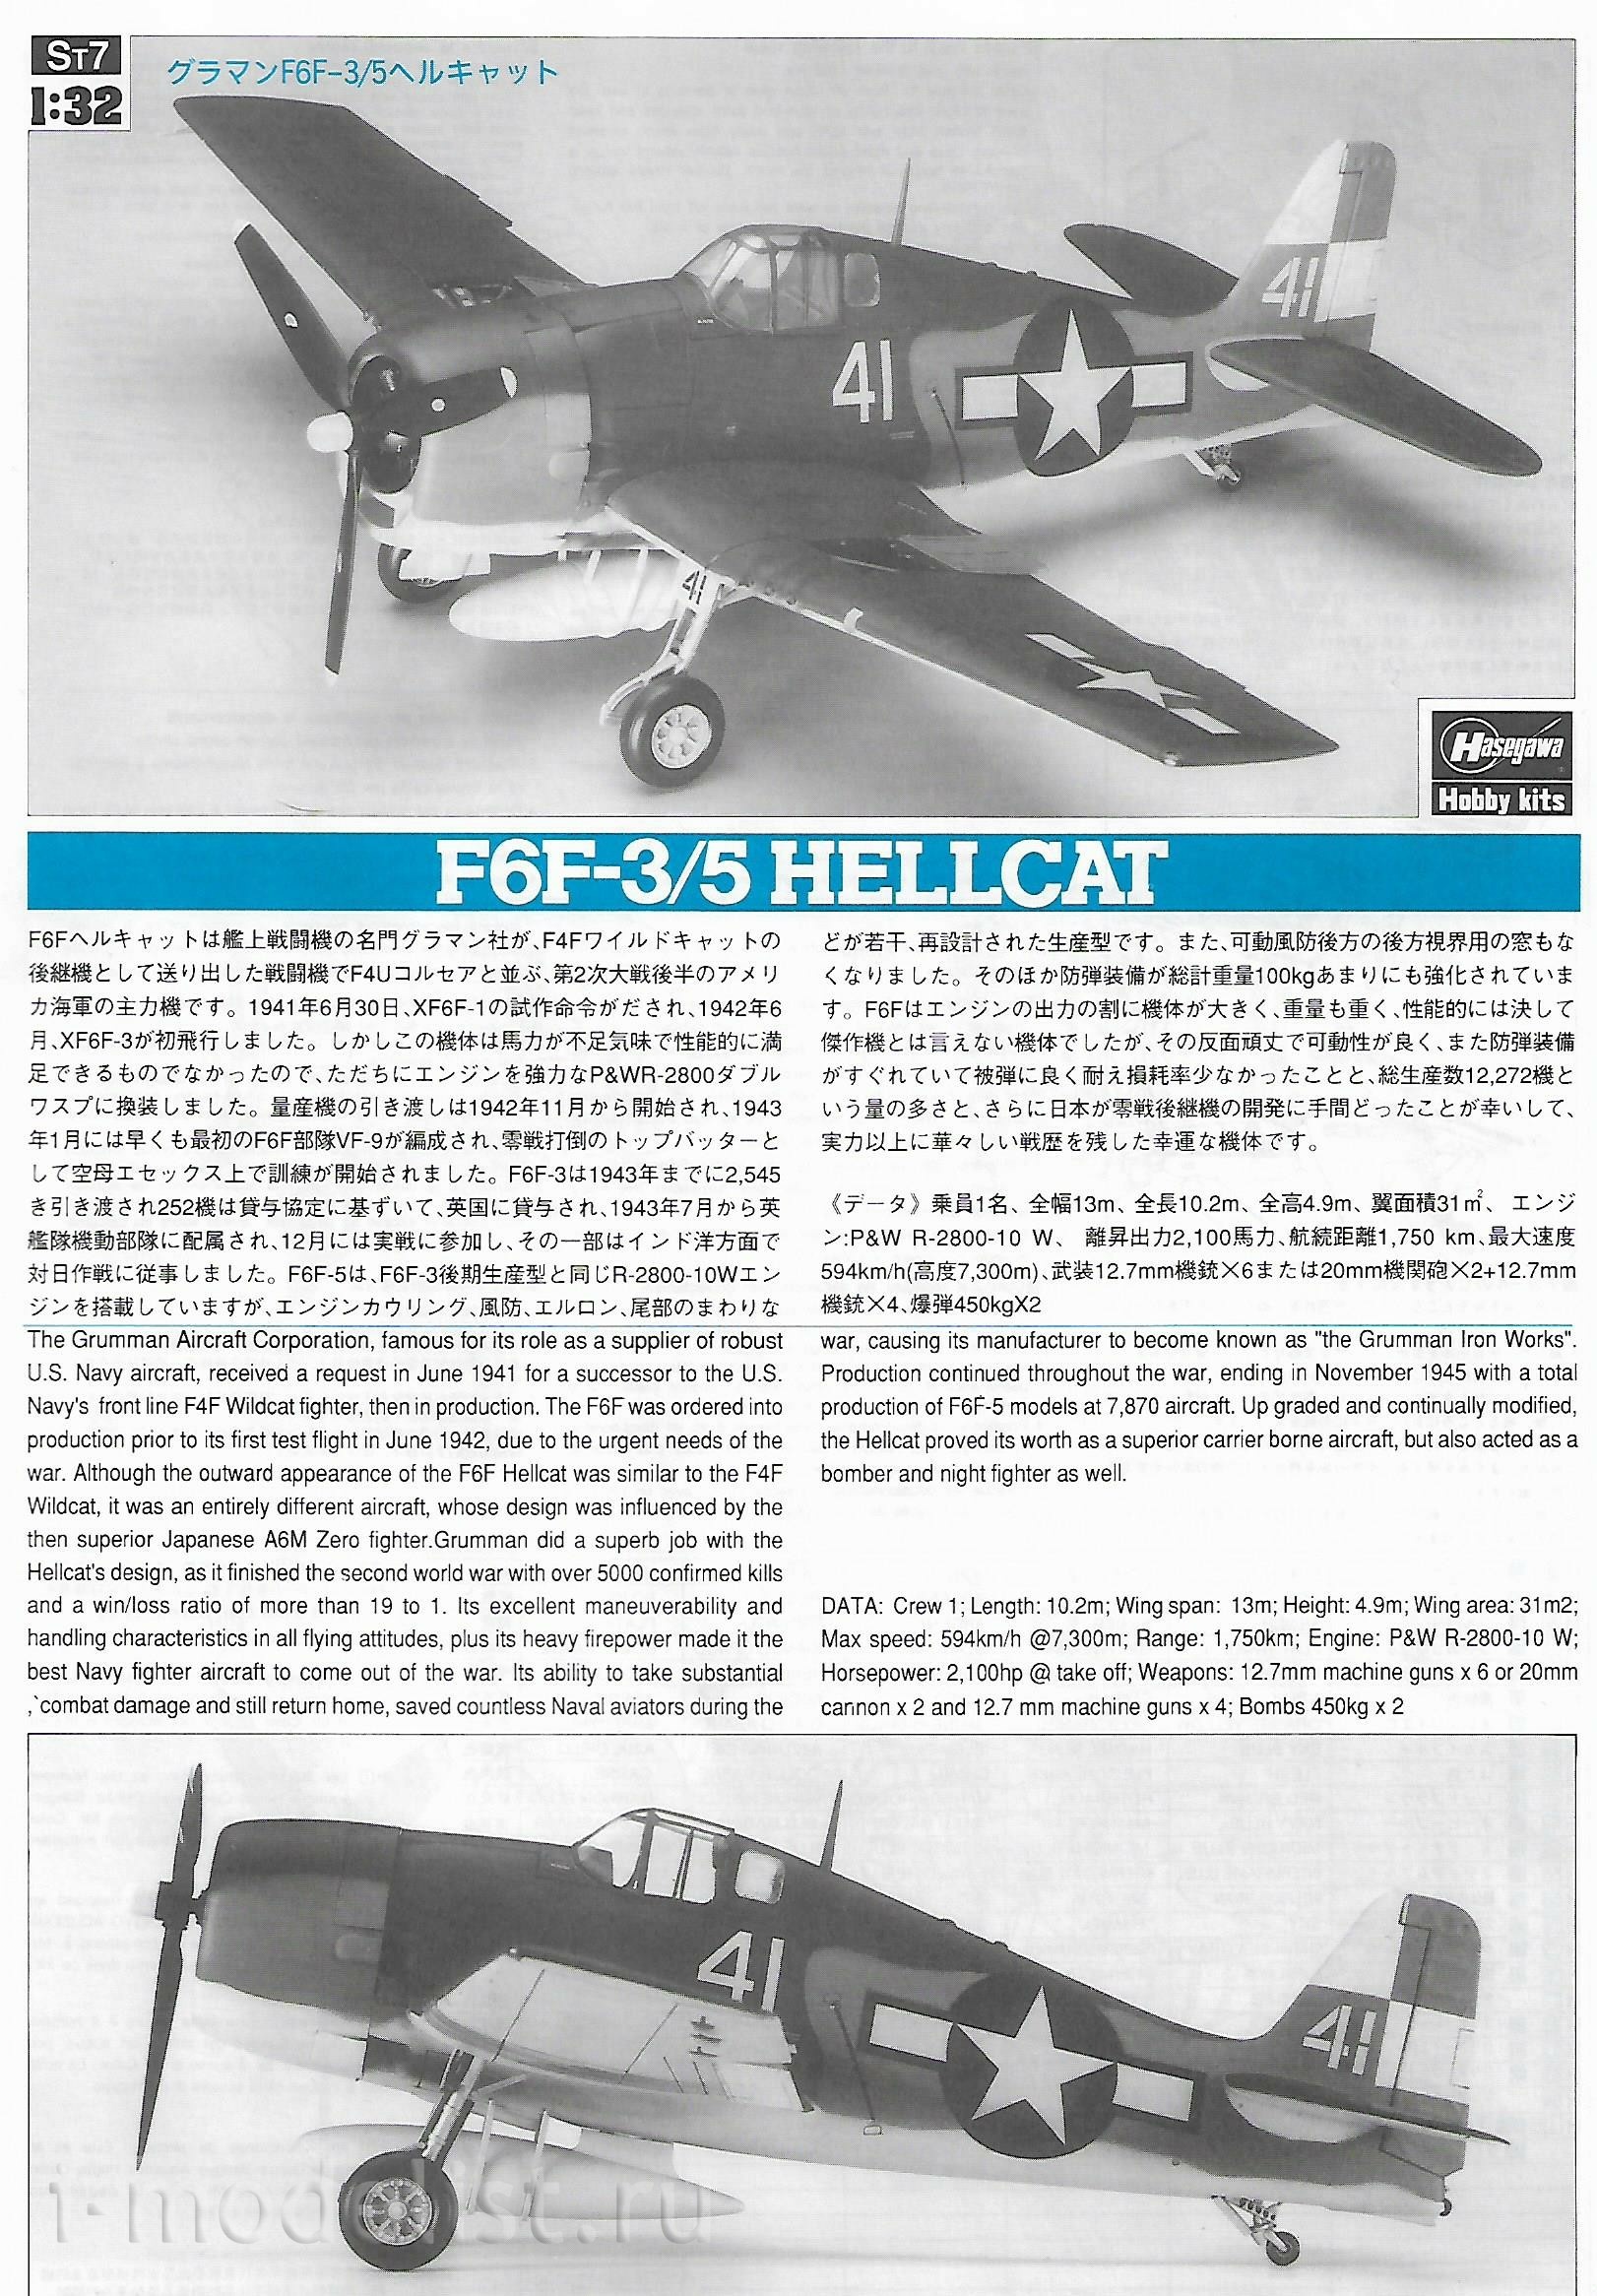 08057 Hasegawa 1/32 F6F-3/5 Hellcat